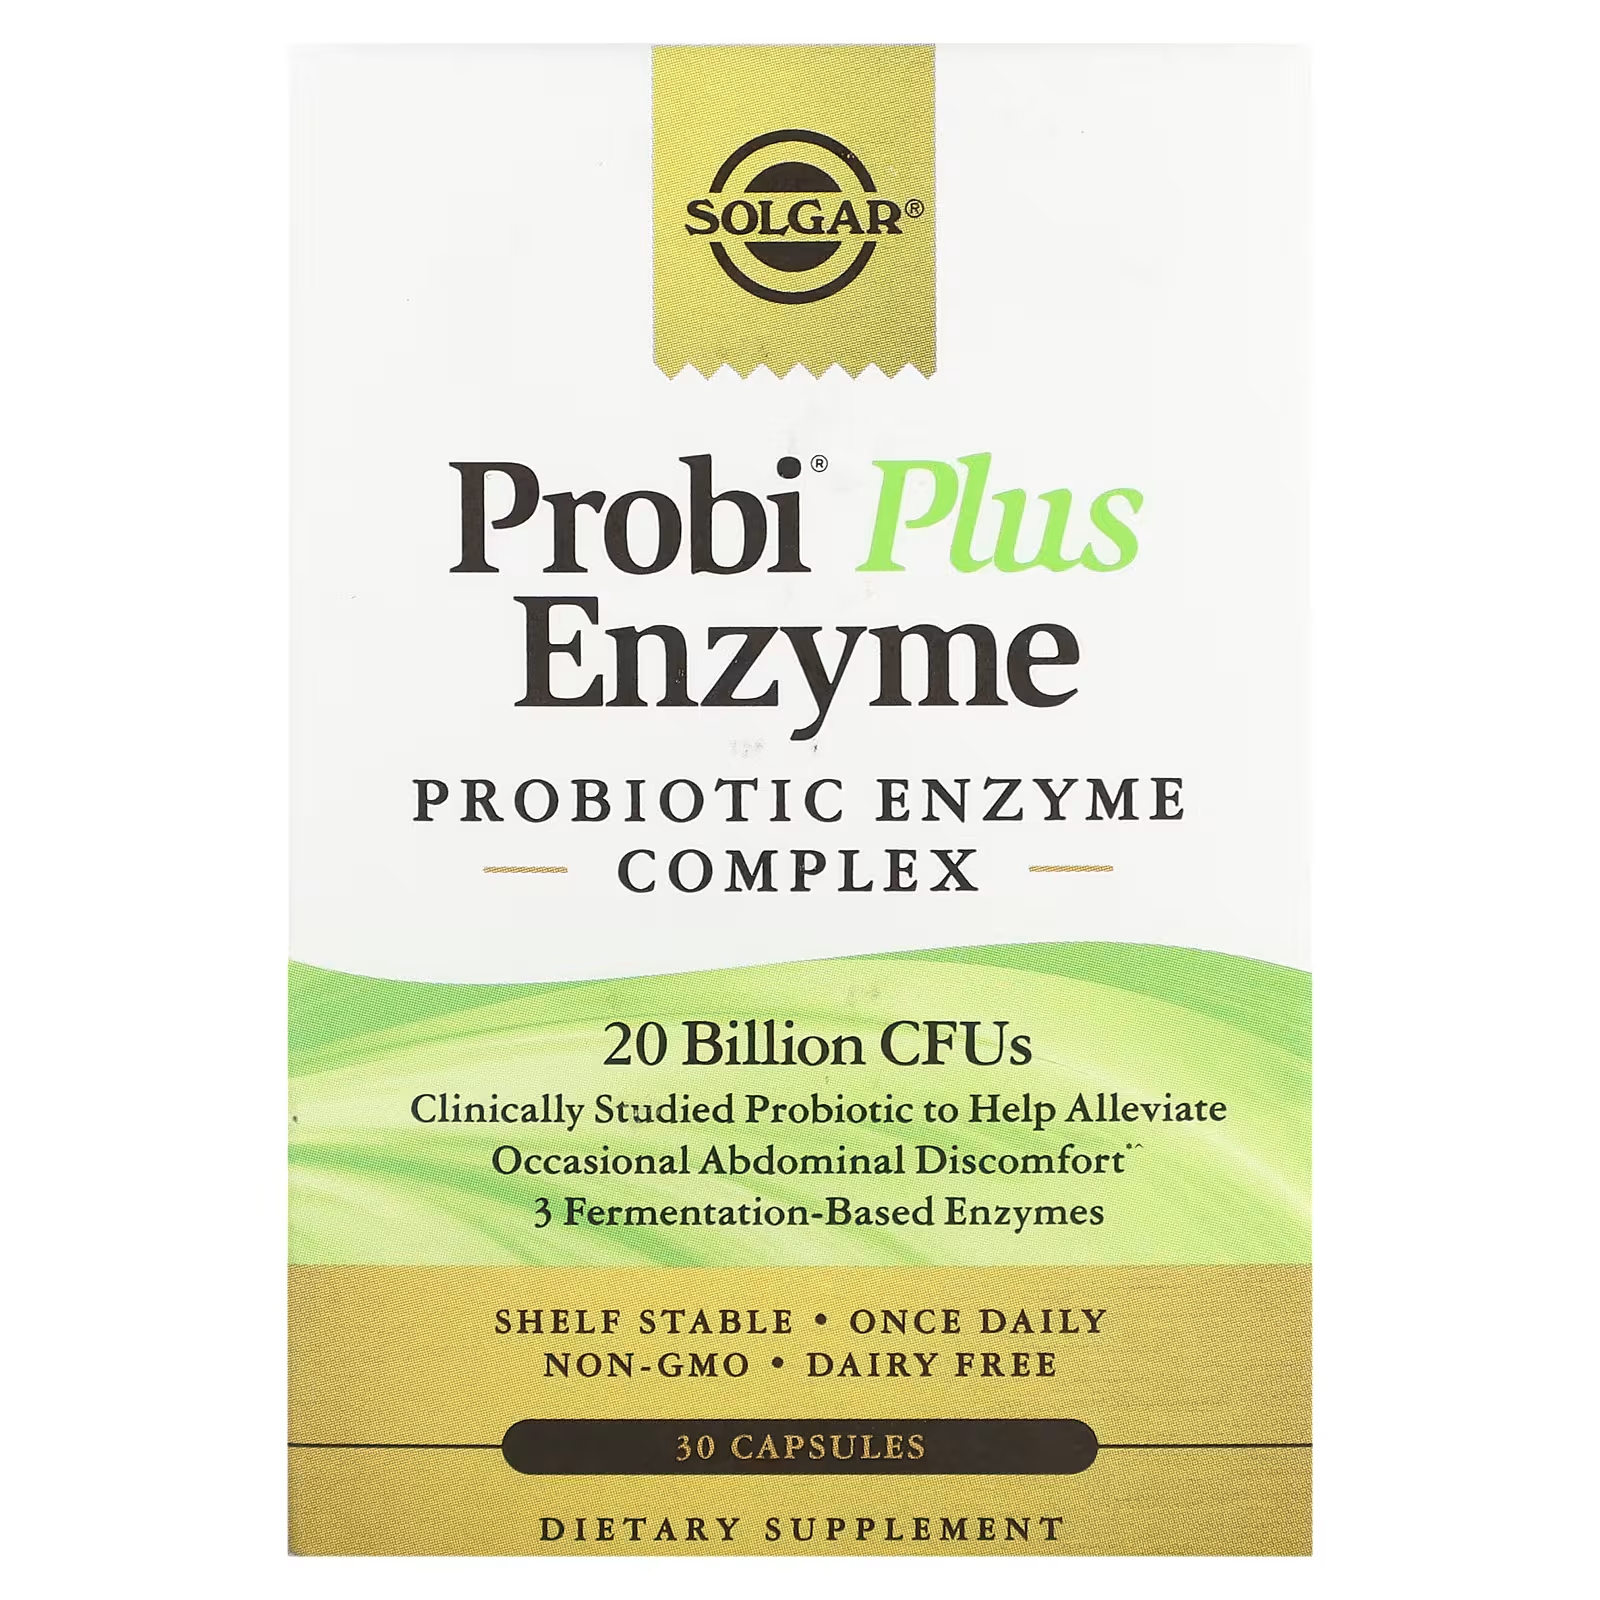 Пробиотический ферментный комплекс Solgar Probi Plus Enzyme, 30 капсул пробиотический комплекс l reuteri plus swanson 30 капсул 4 упаковки